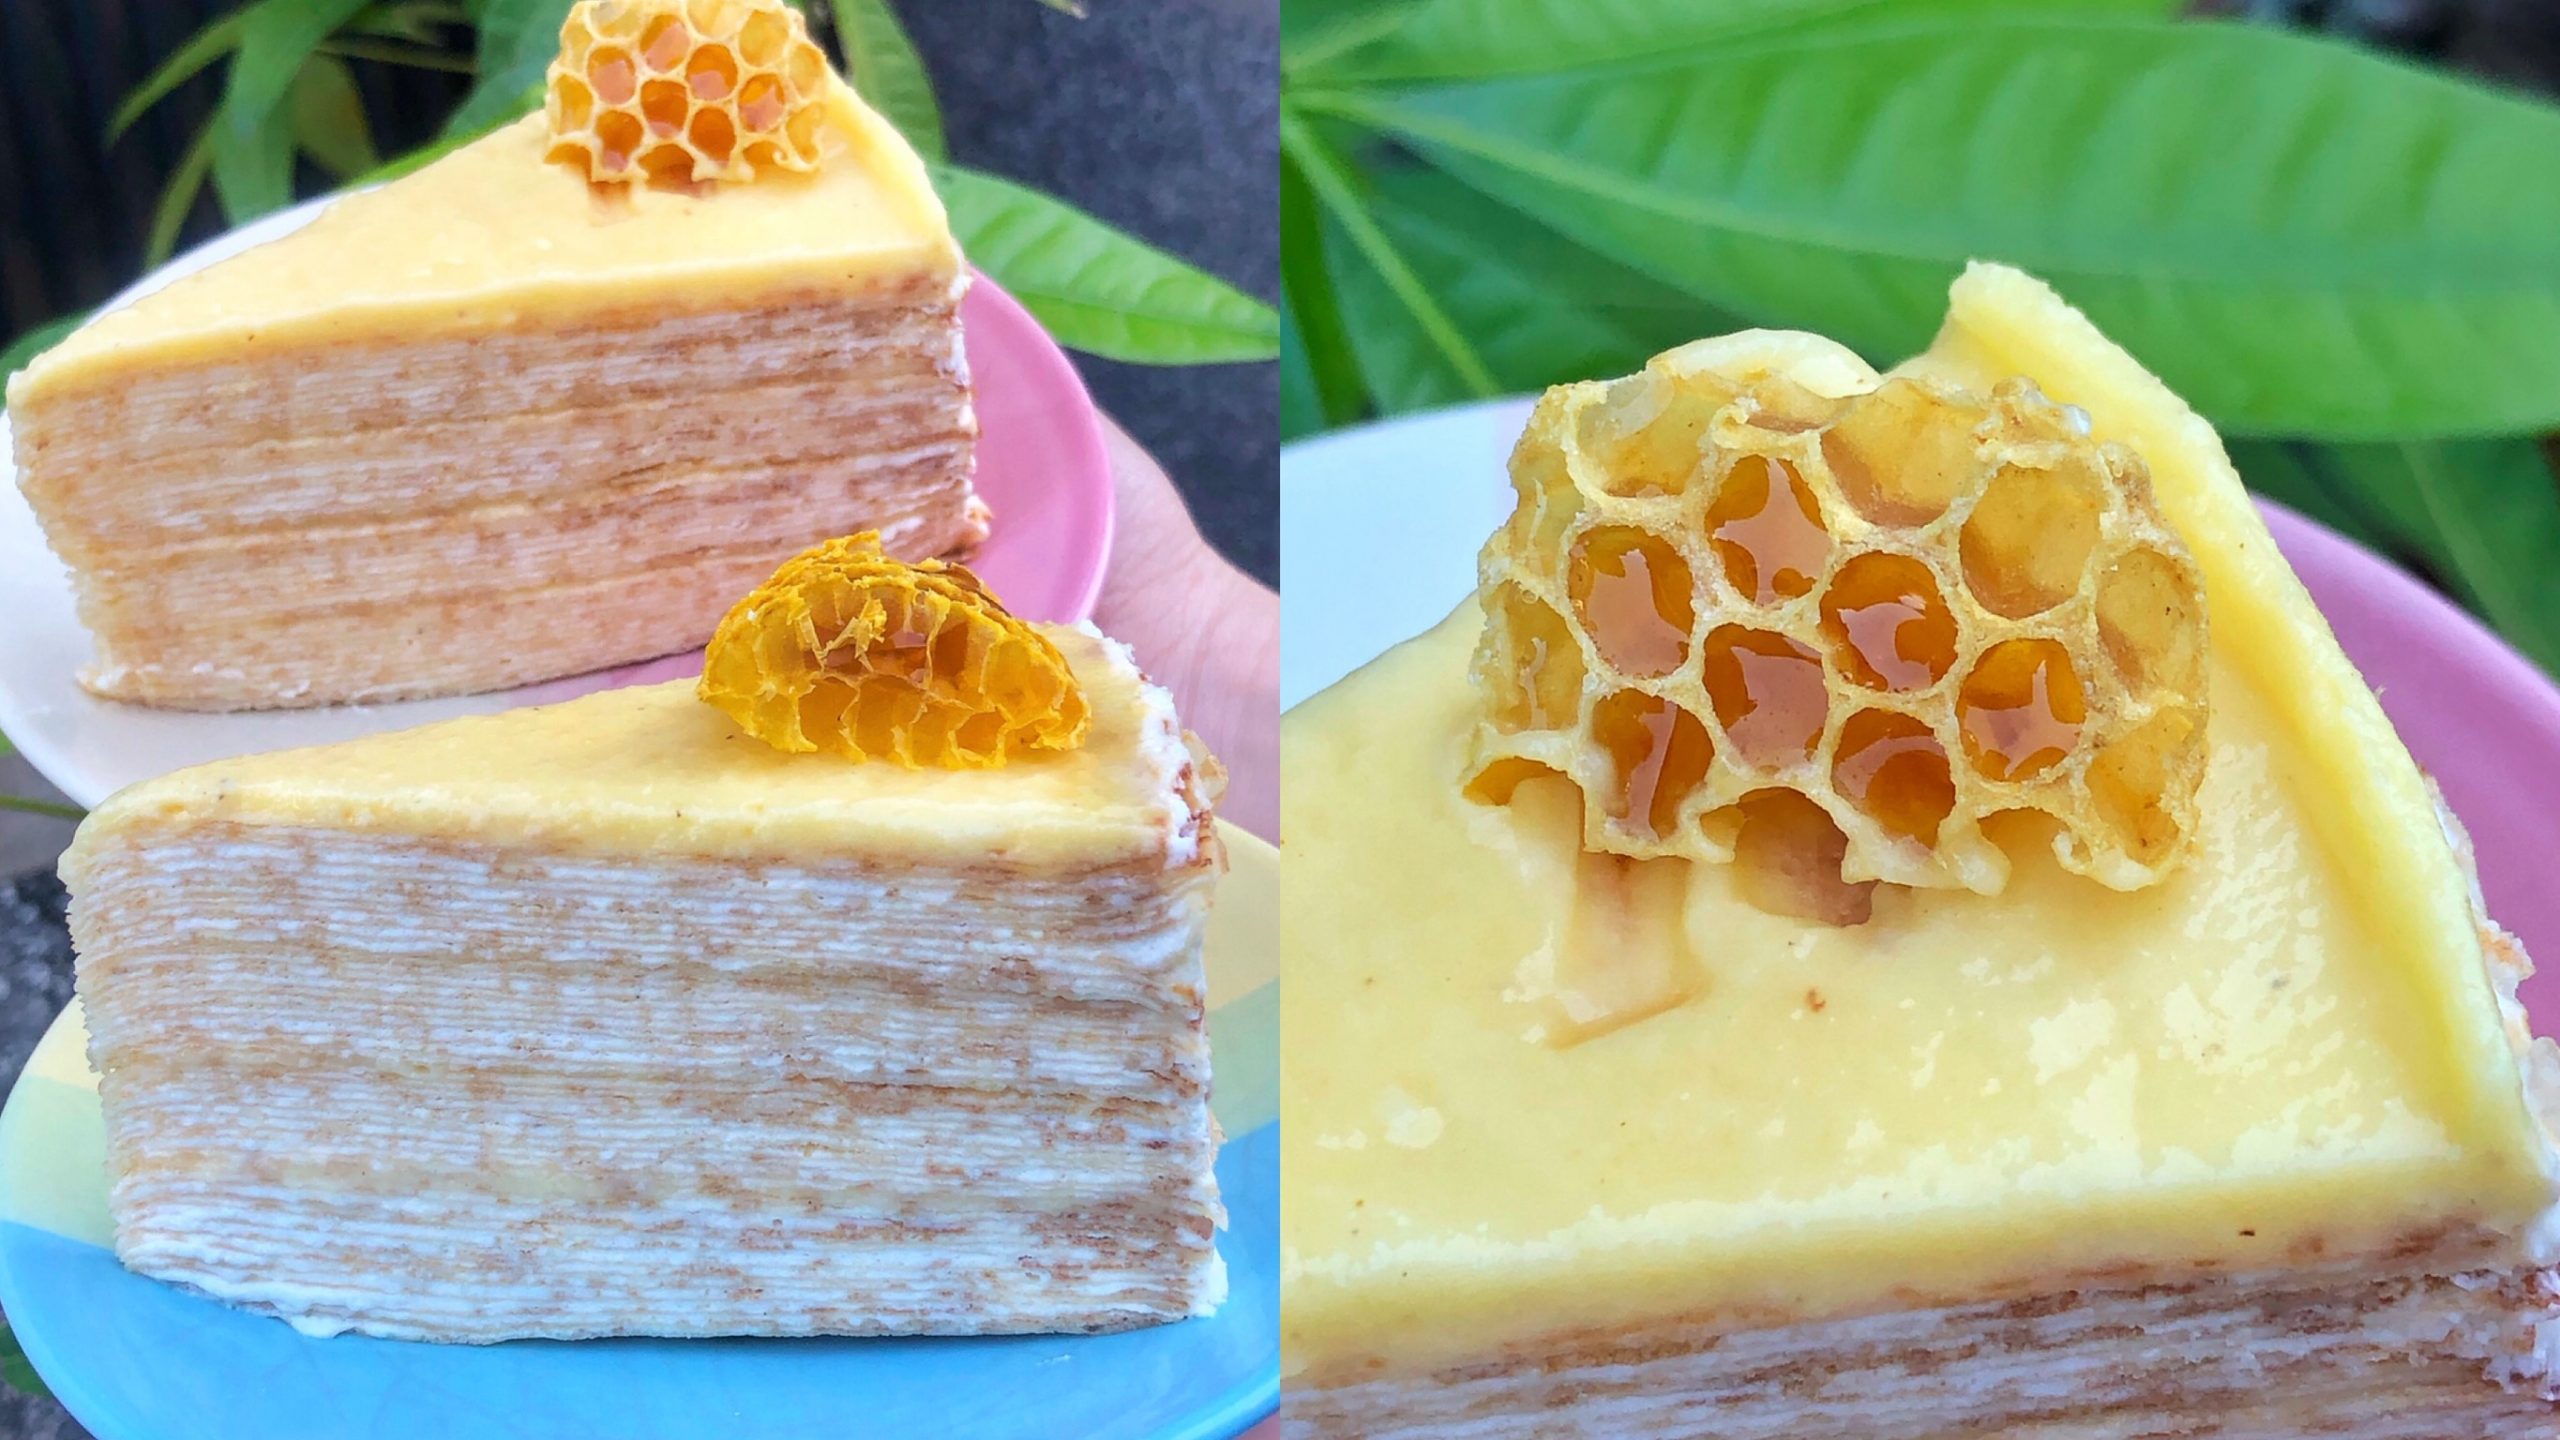 只有台南吃得到「蜂巢蜜蜂千層」一片85元!! 同二廚房烘焙千層蛋糕通通百元有找 一天開3.5小時